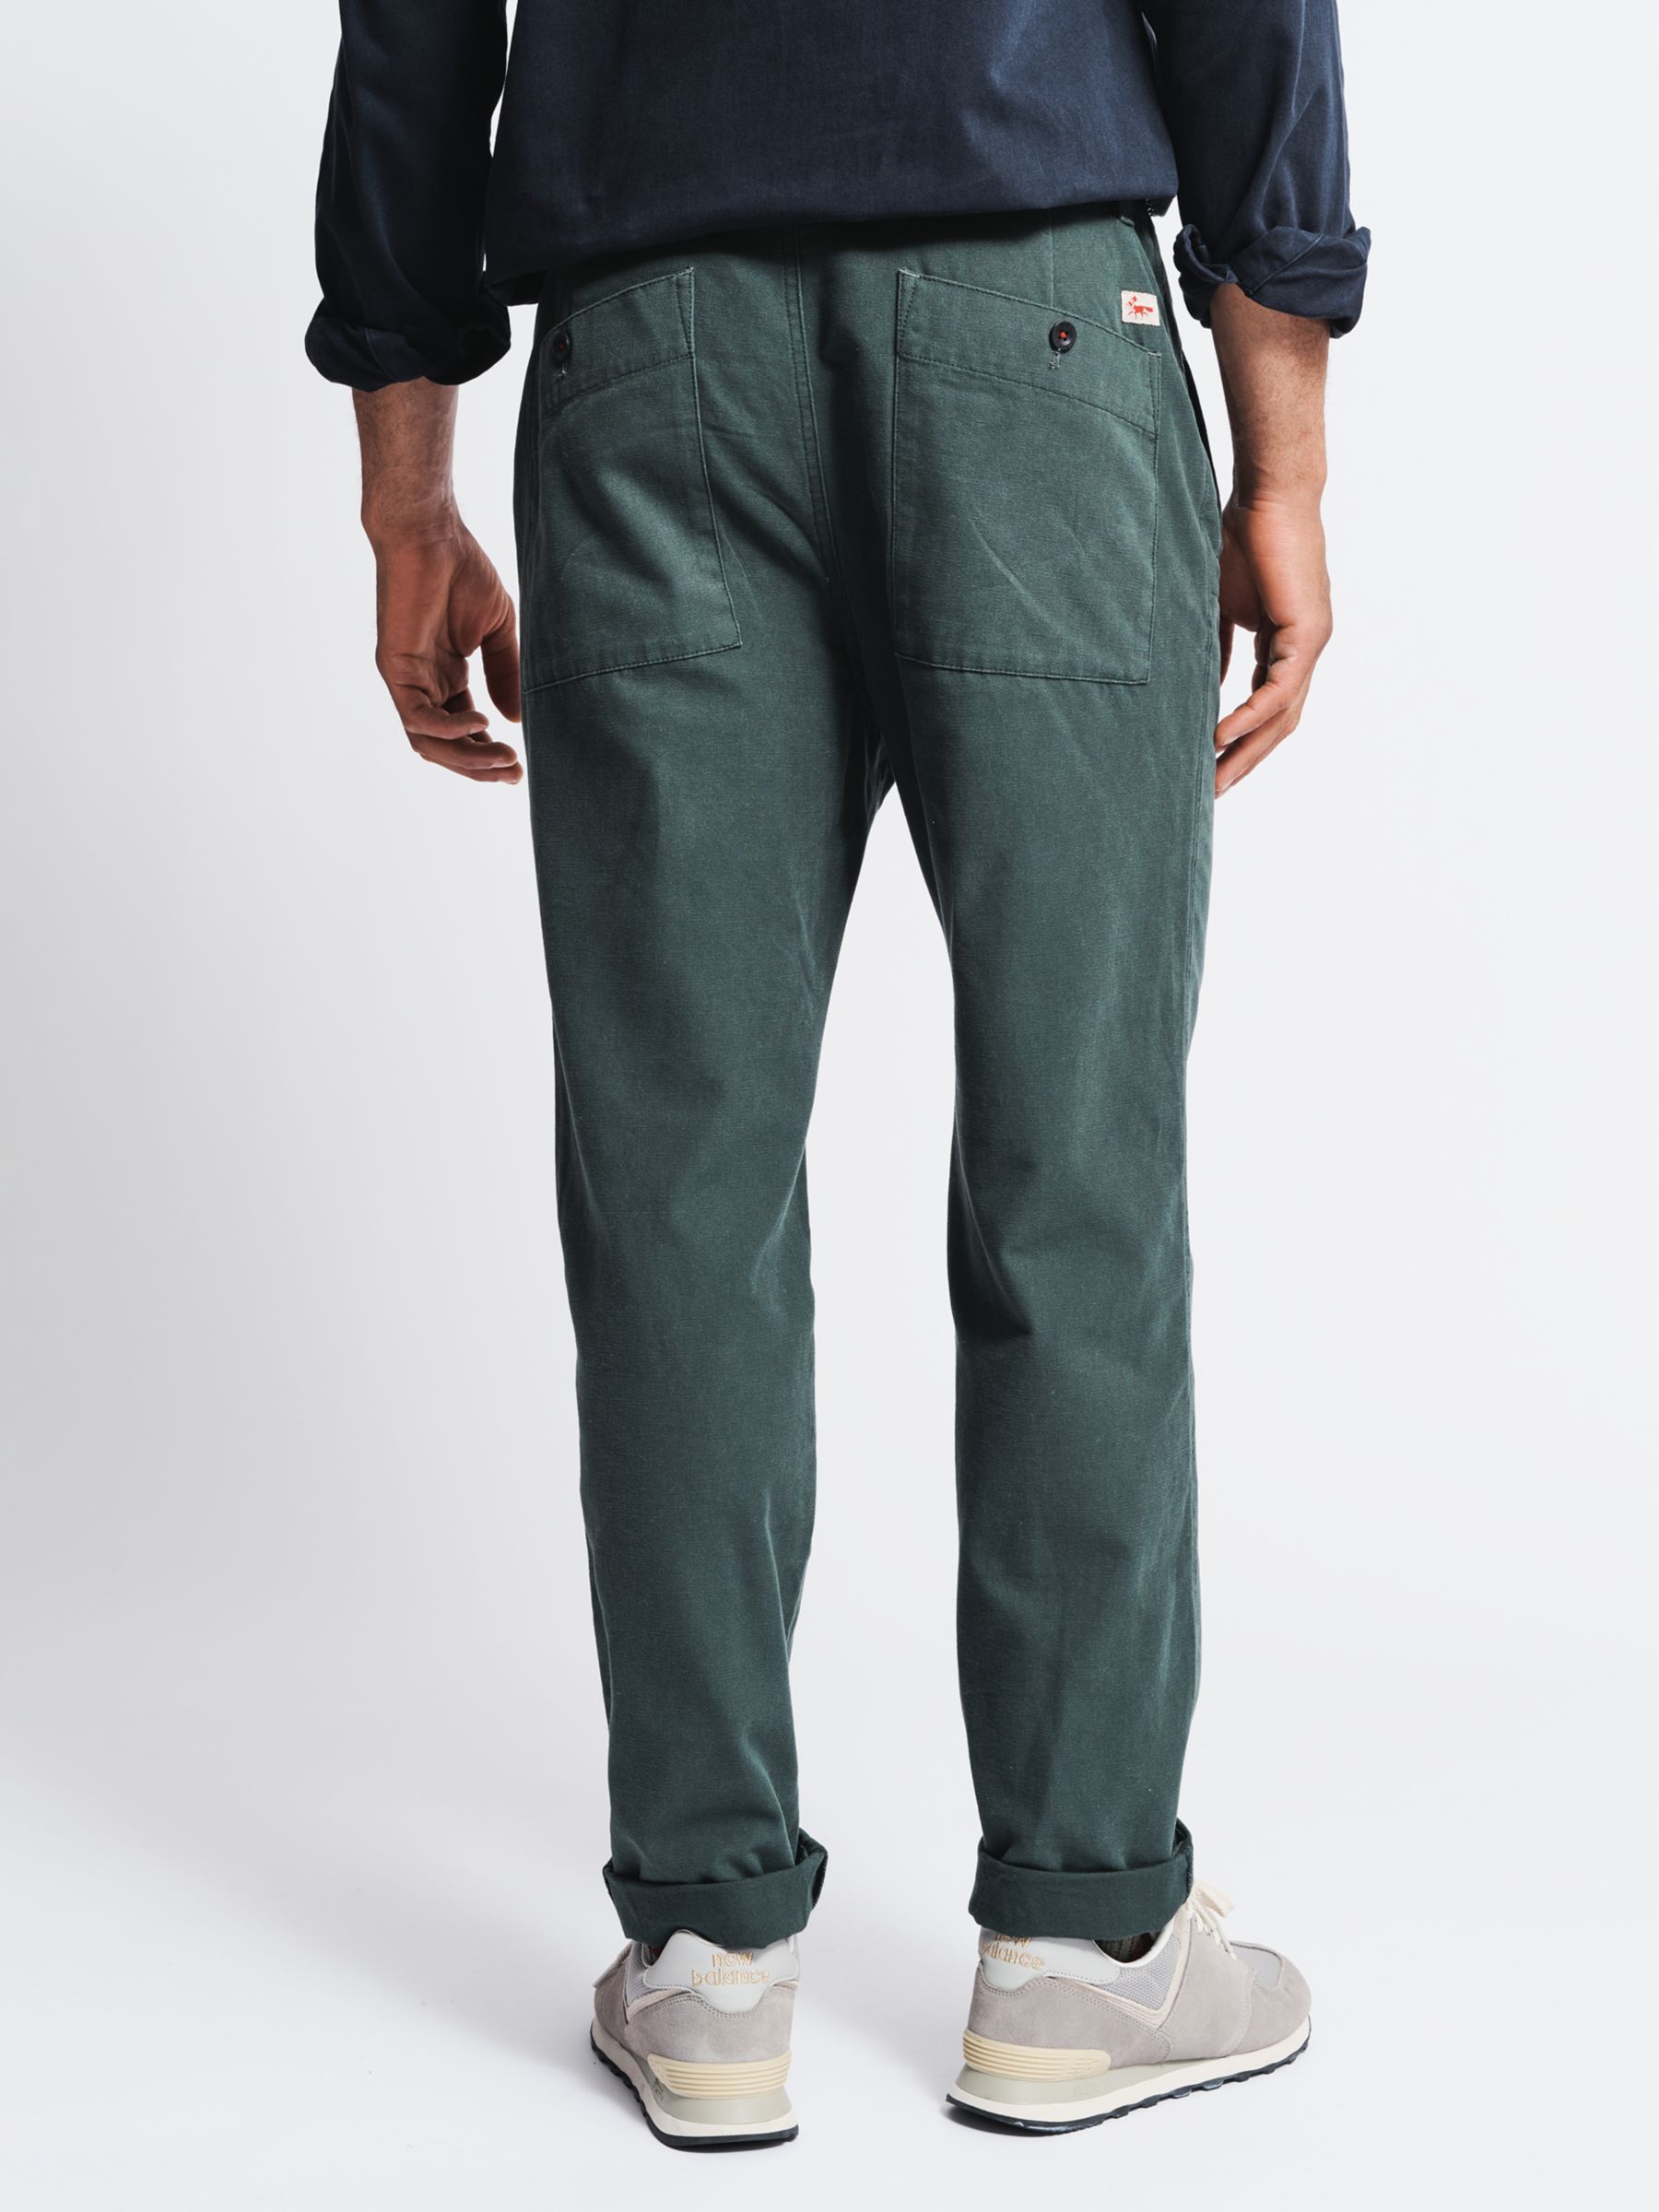 Aubin Nettleton Trousers, Dark Green, 30R